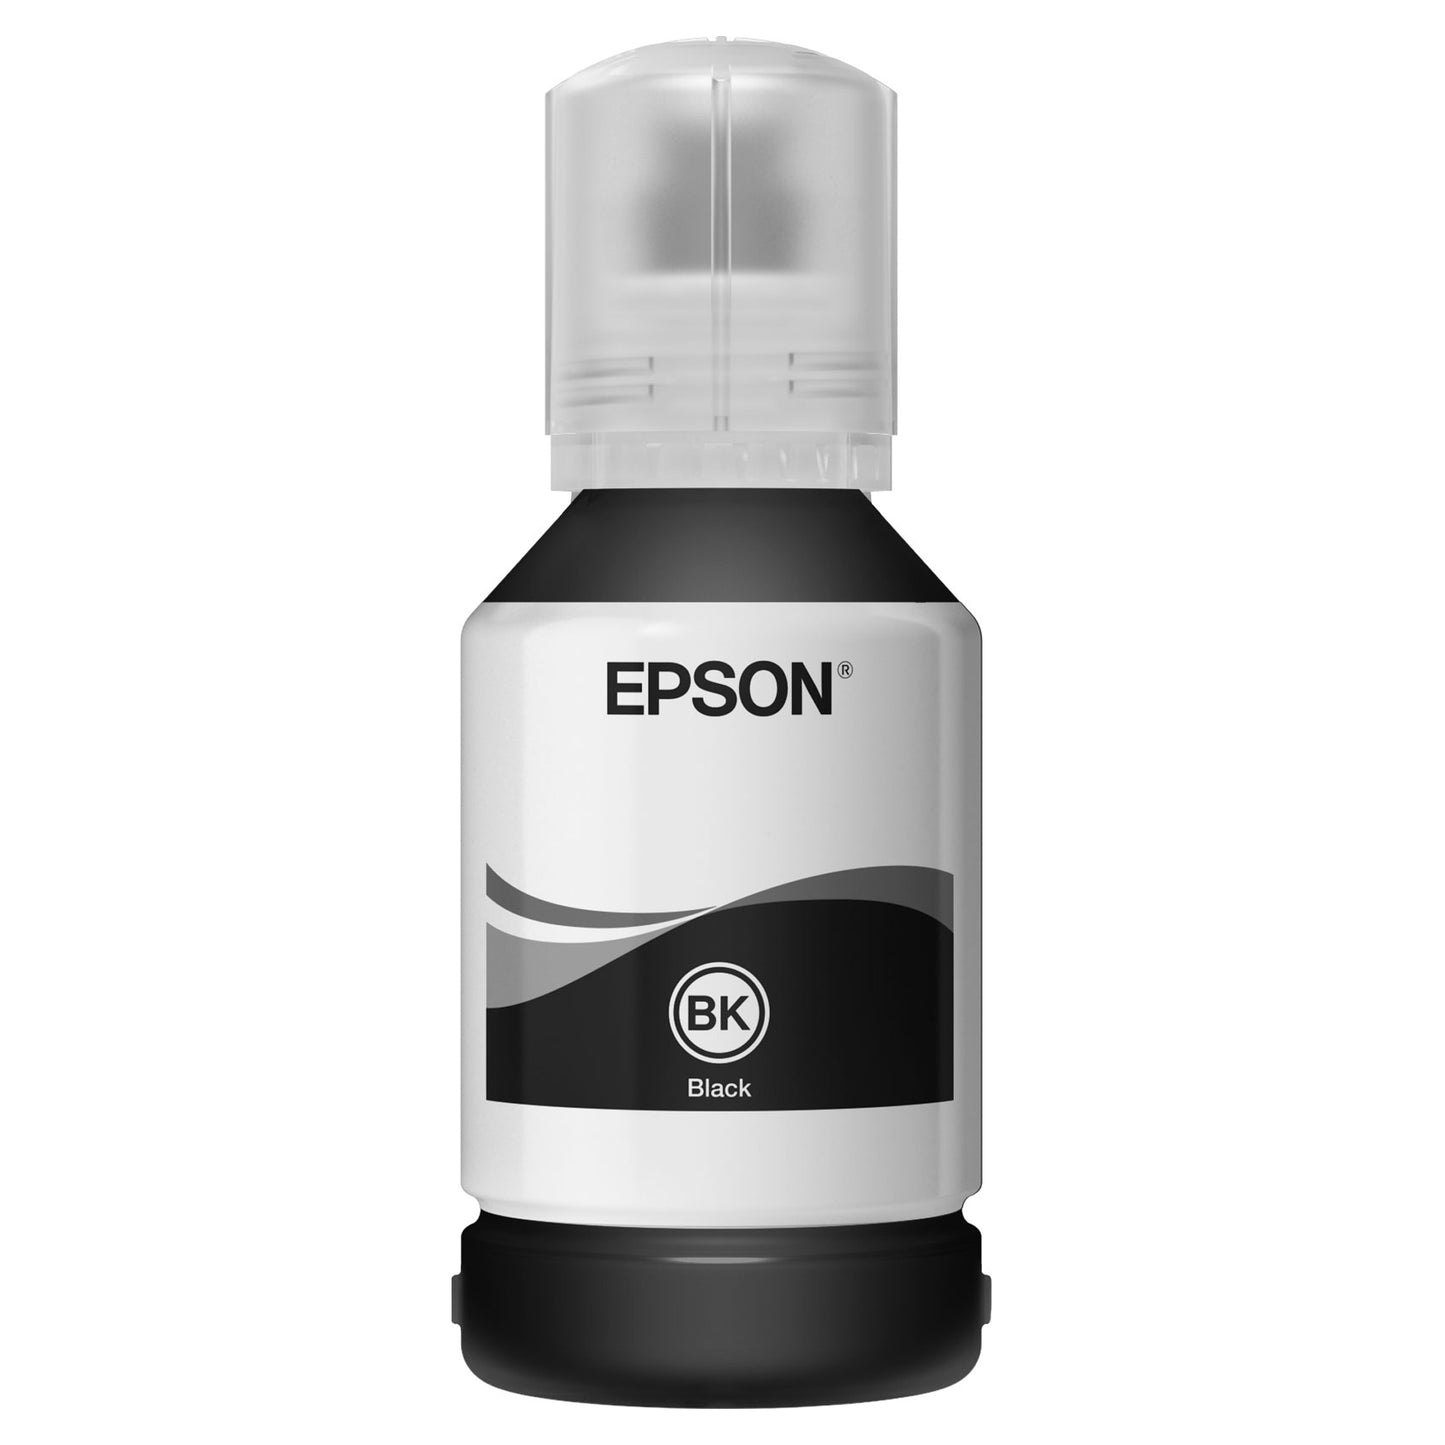 Epson 005 Ink Refill Bottle (120mL) Black for Printer EcoTank M1140 / M1120 / M2140 / M1100 / M3170